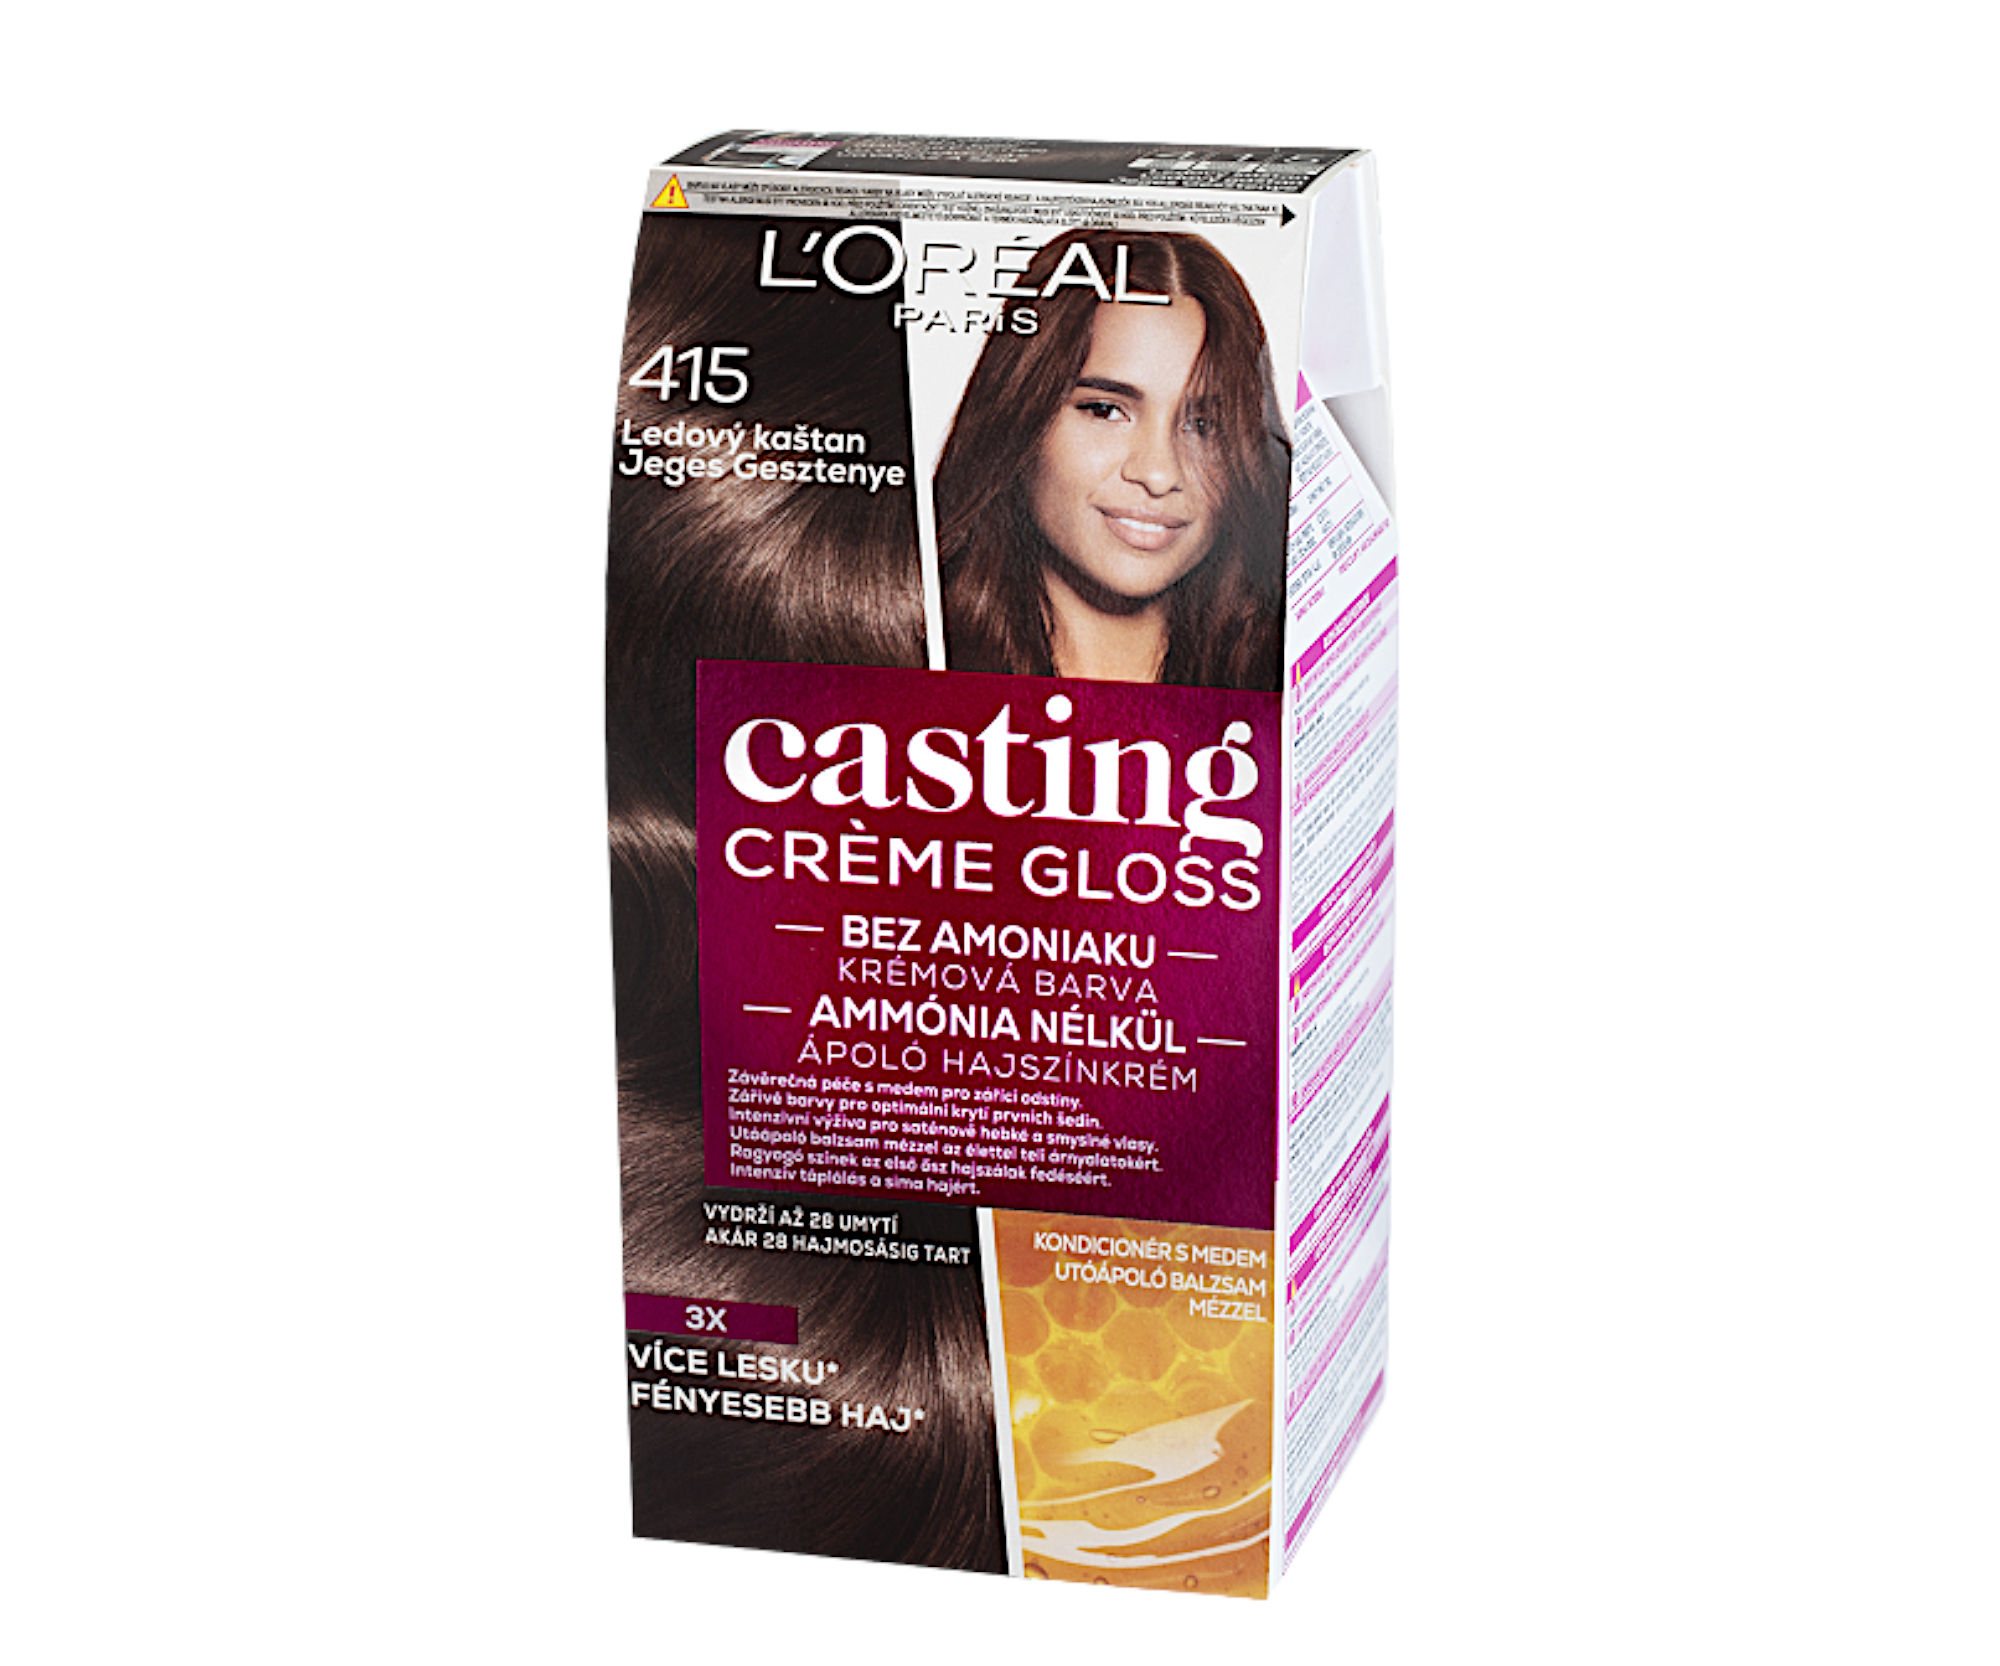 Přeliv bez amoniaku Loréal Casting Créme Gloss - 415 ledový kaštan - L’Oréal Paris + dárek zdarma